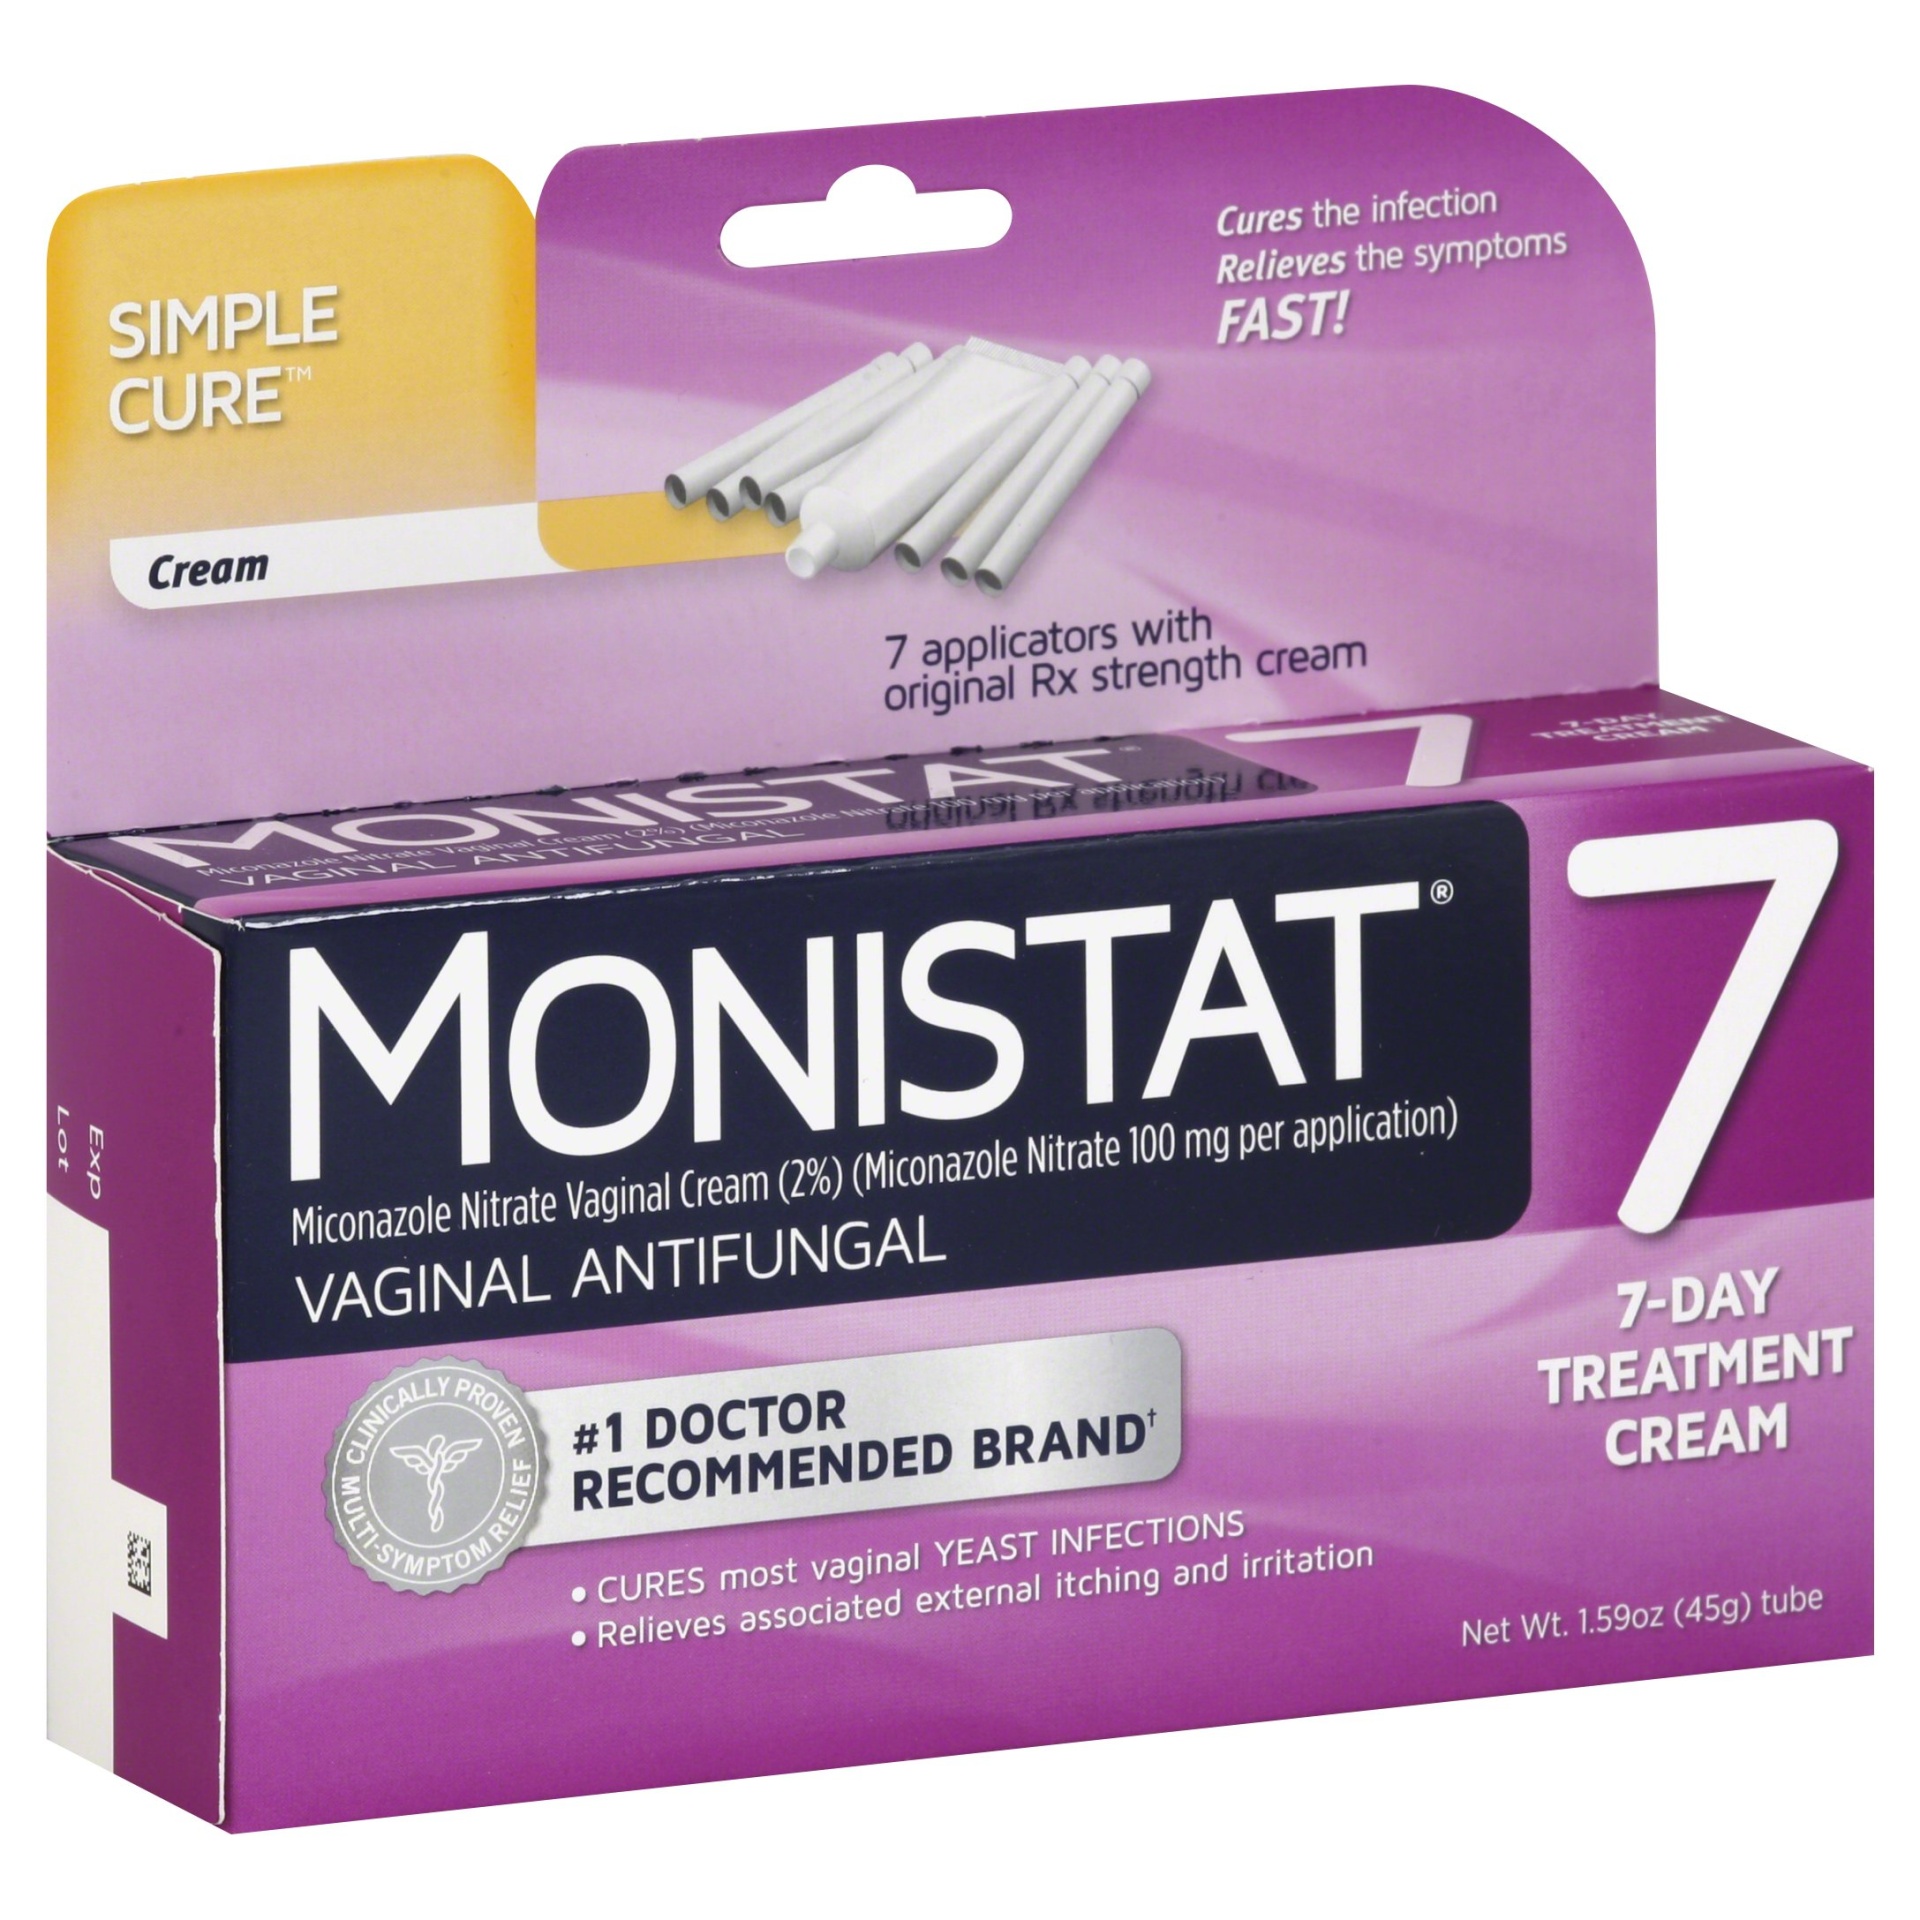 monistat antifungal cream